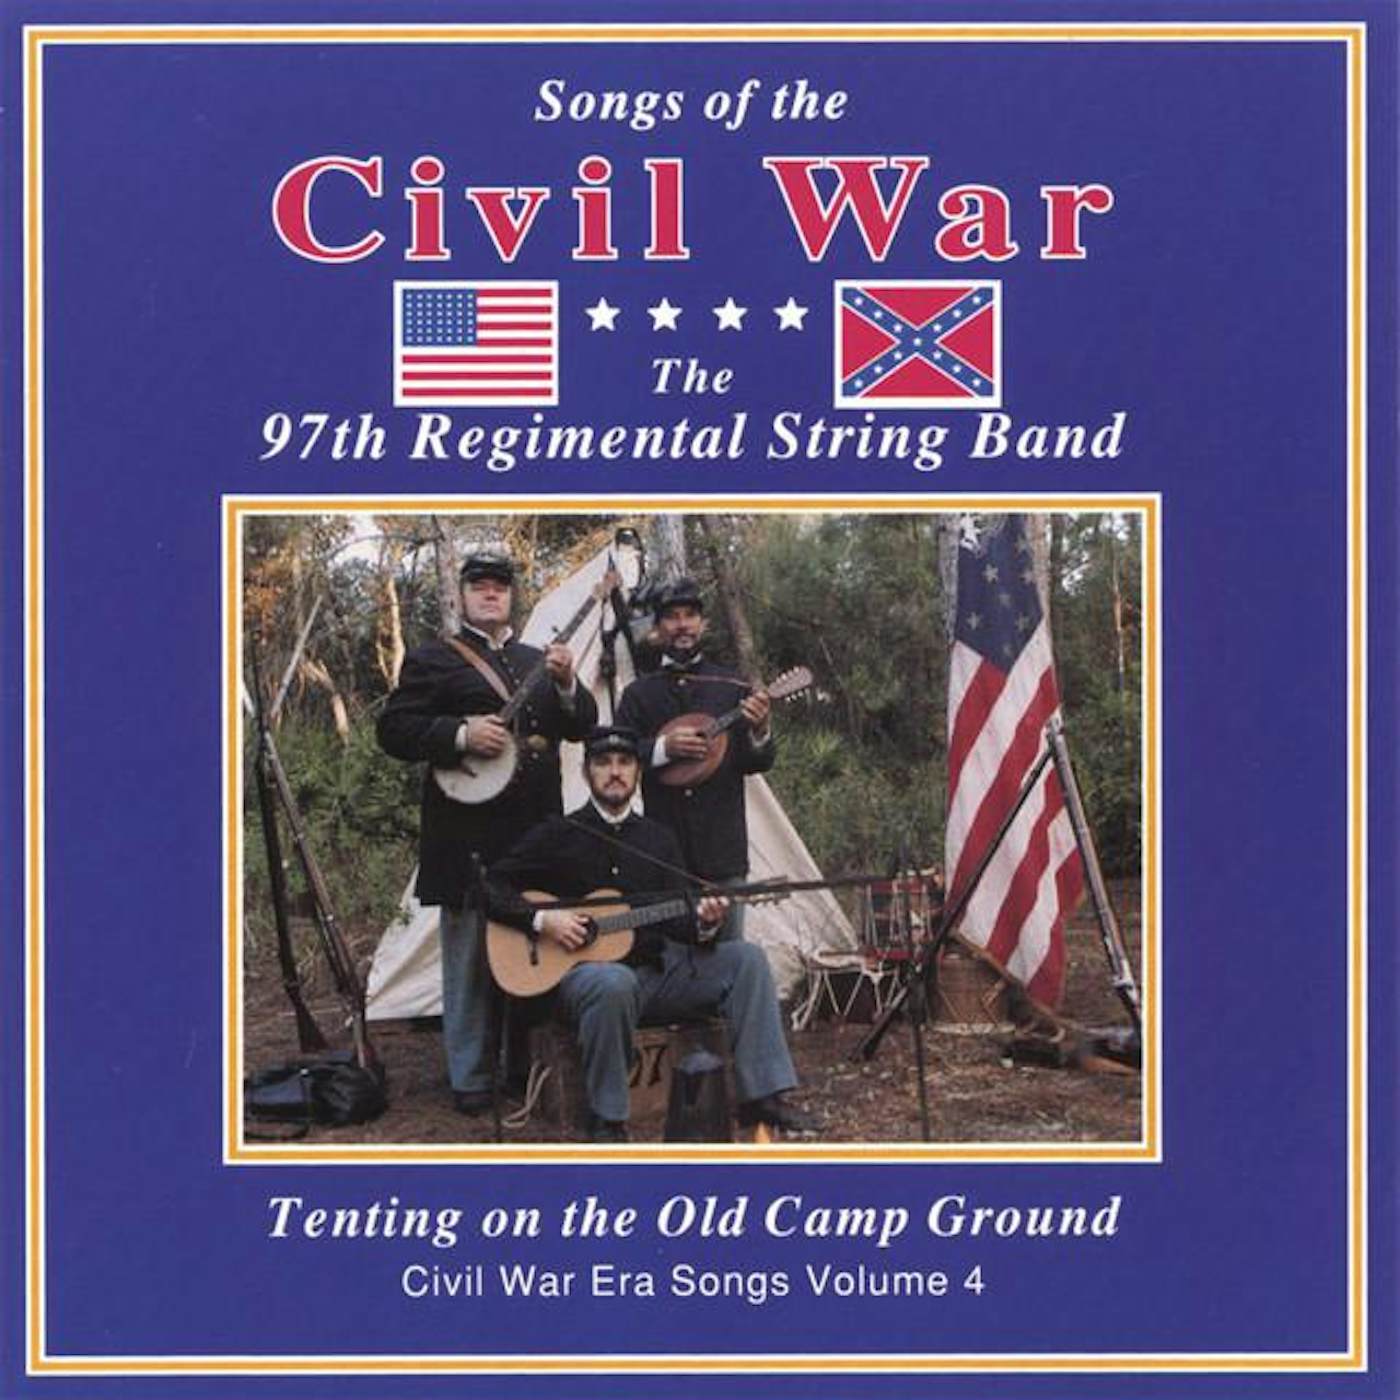 97th Regimental String Band